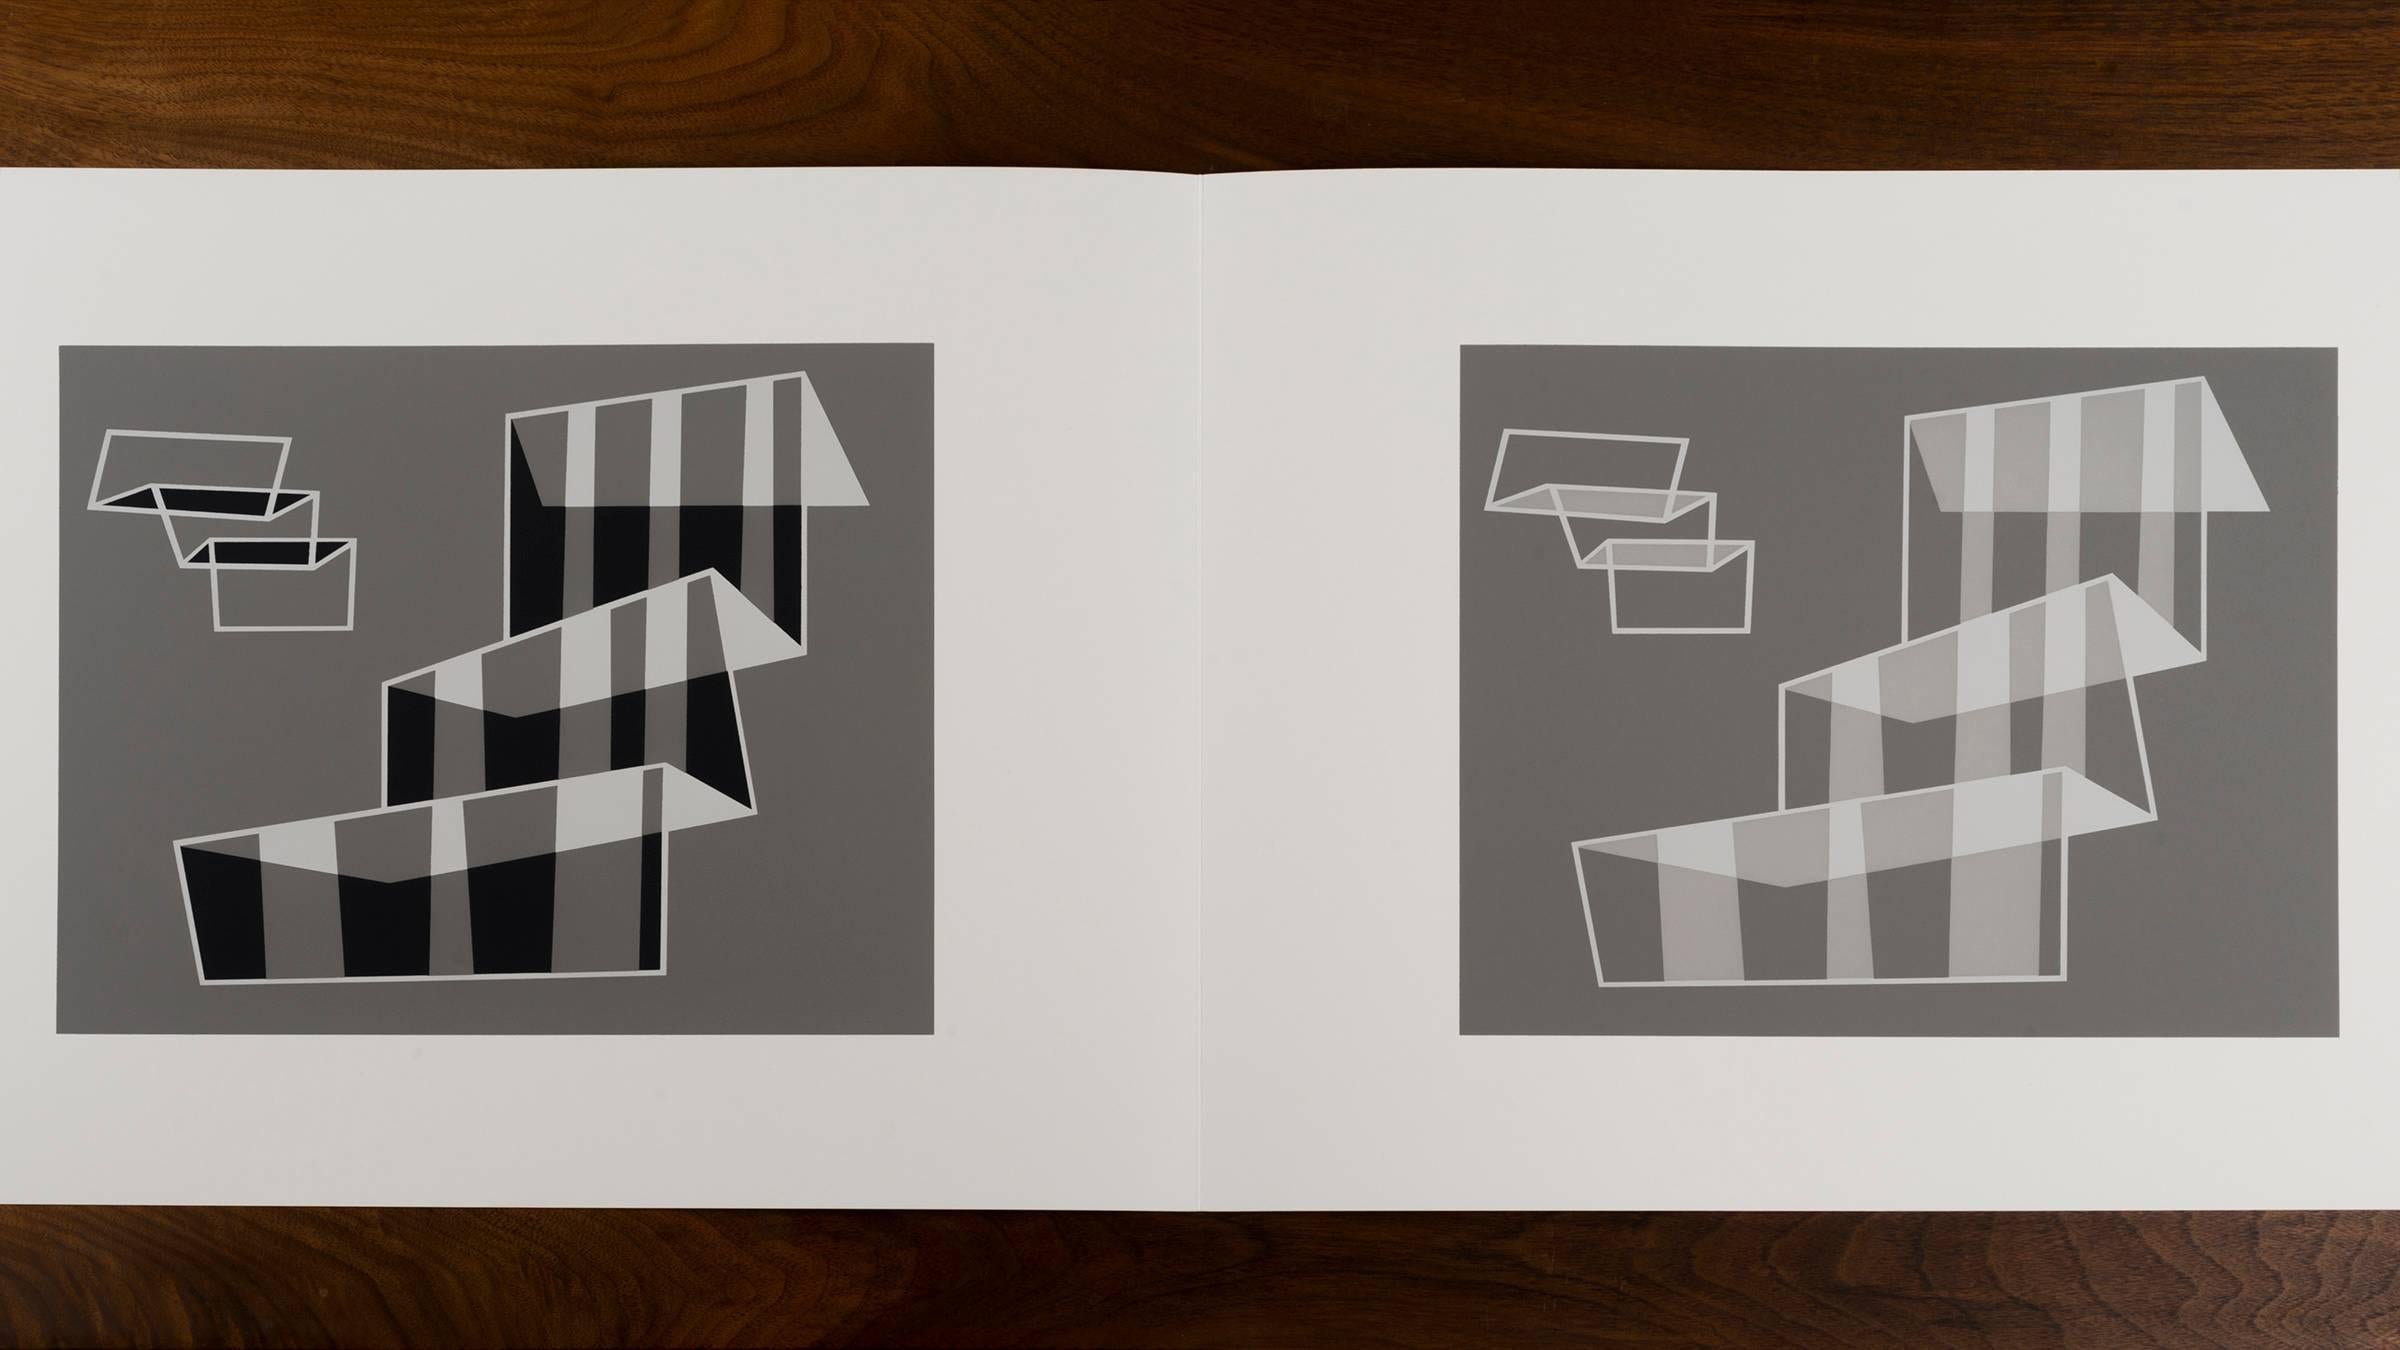 Josef Albers Formulierungen - Artikulationen I & II
Ausgabe 974/ 1000
1972 Siebdruck auf Papier
Geprägt mit den Initialen von Josef Albers, Mappen- und Ordnernummer. Dieses Werk wird von Harry N. Abrams und Ives-Sillman veröffentlicht.
Dieses Werk